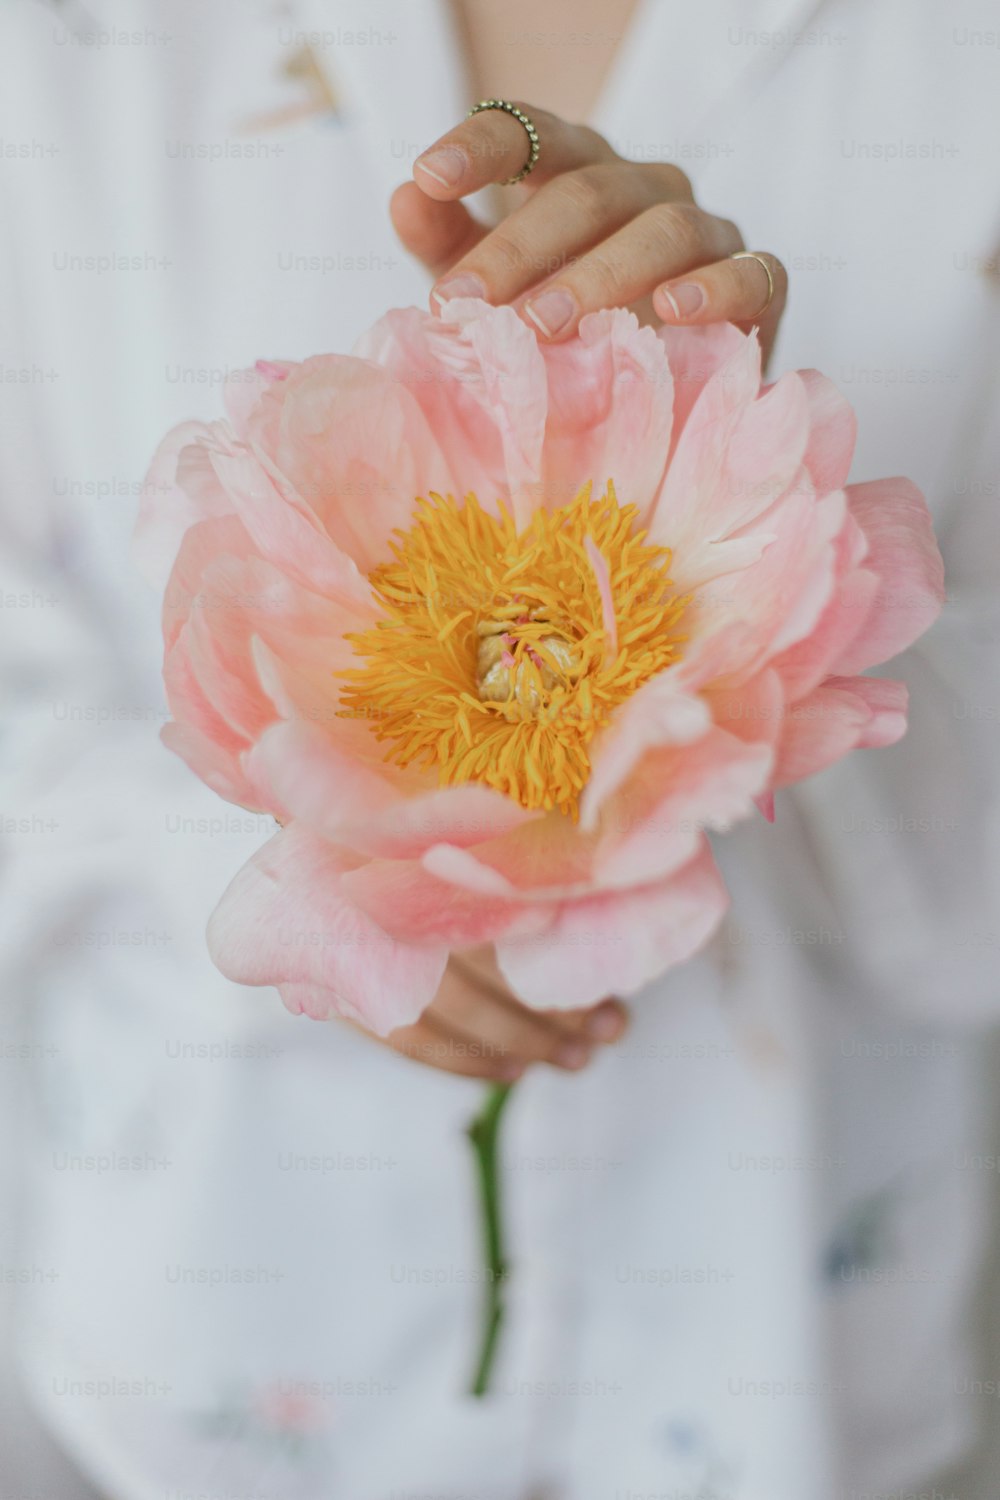 Belle femme sensuelle avec une pivoine rose dans les mains. Jeune femme élégante en chemise à fleurs bohème tenant doucement une grande fleur de pivoine. Image tendre et douce. Esthétique printanière